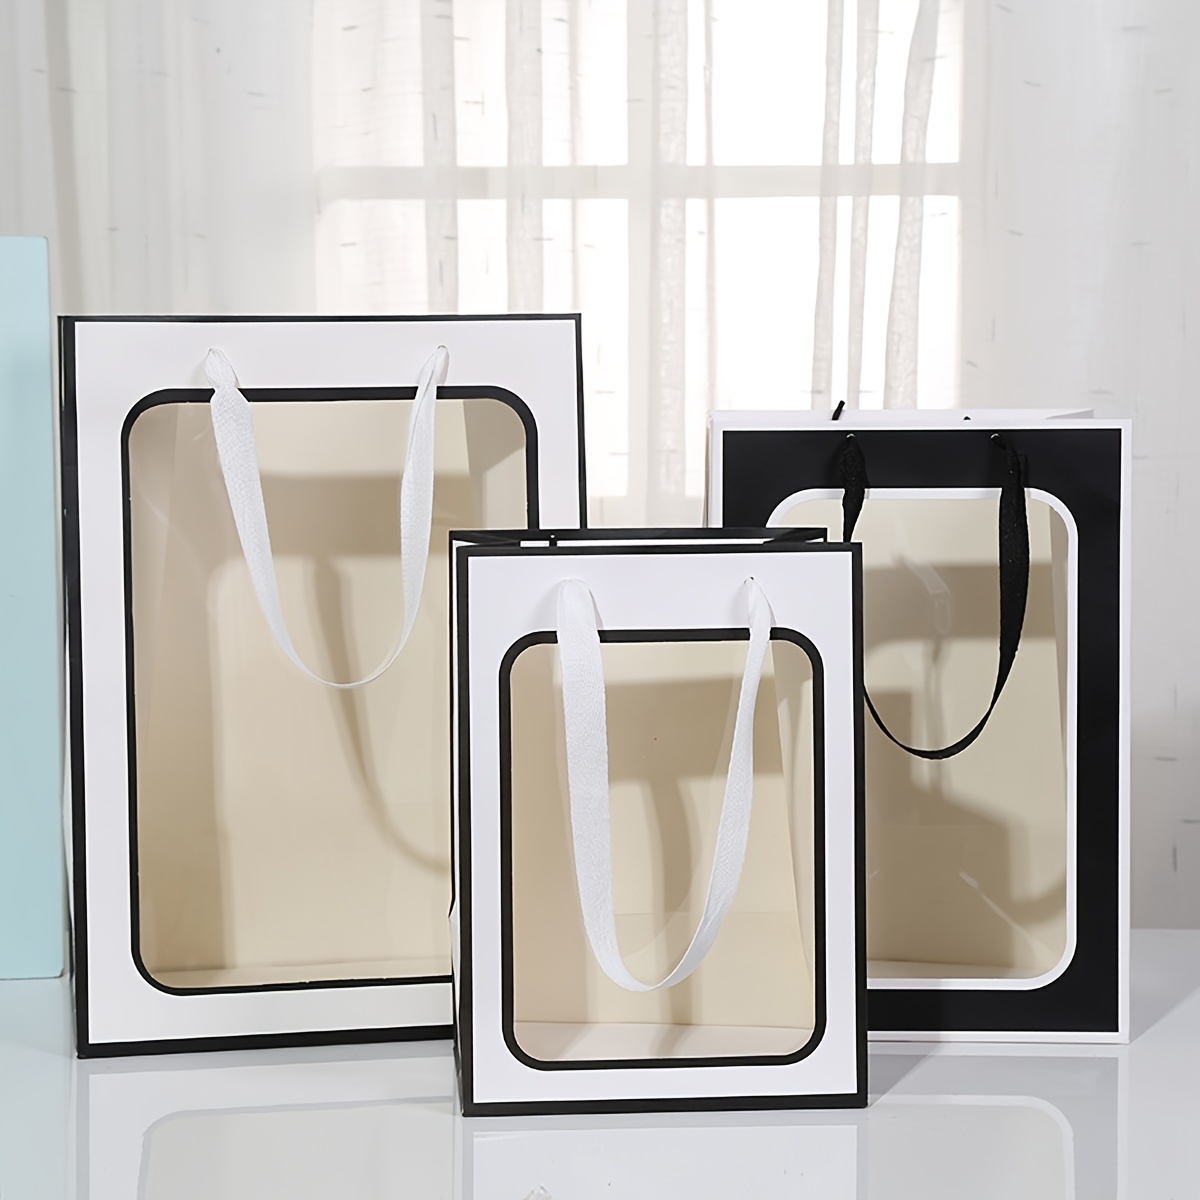 4 pezzi di sacchetti regalo trasparenti con finestra, 9,8 * 7,1 * 5,1  pollici / 25 * 18 * 13 cm, grandi scatole regalo, bianche / nere